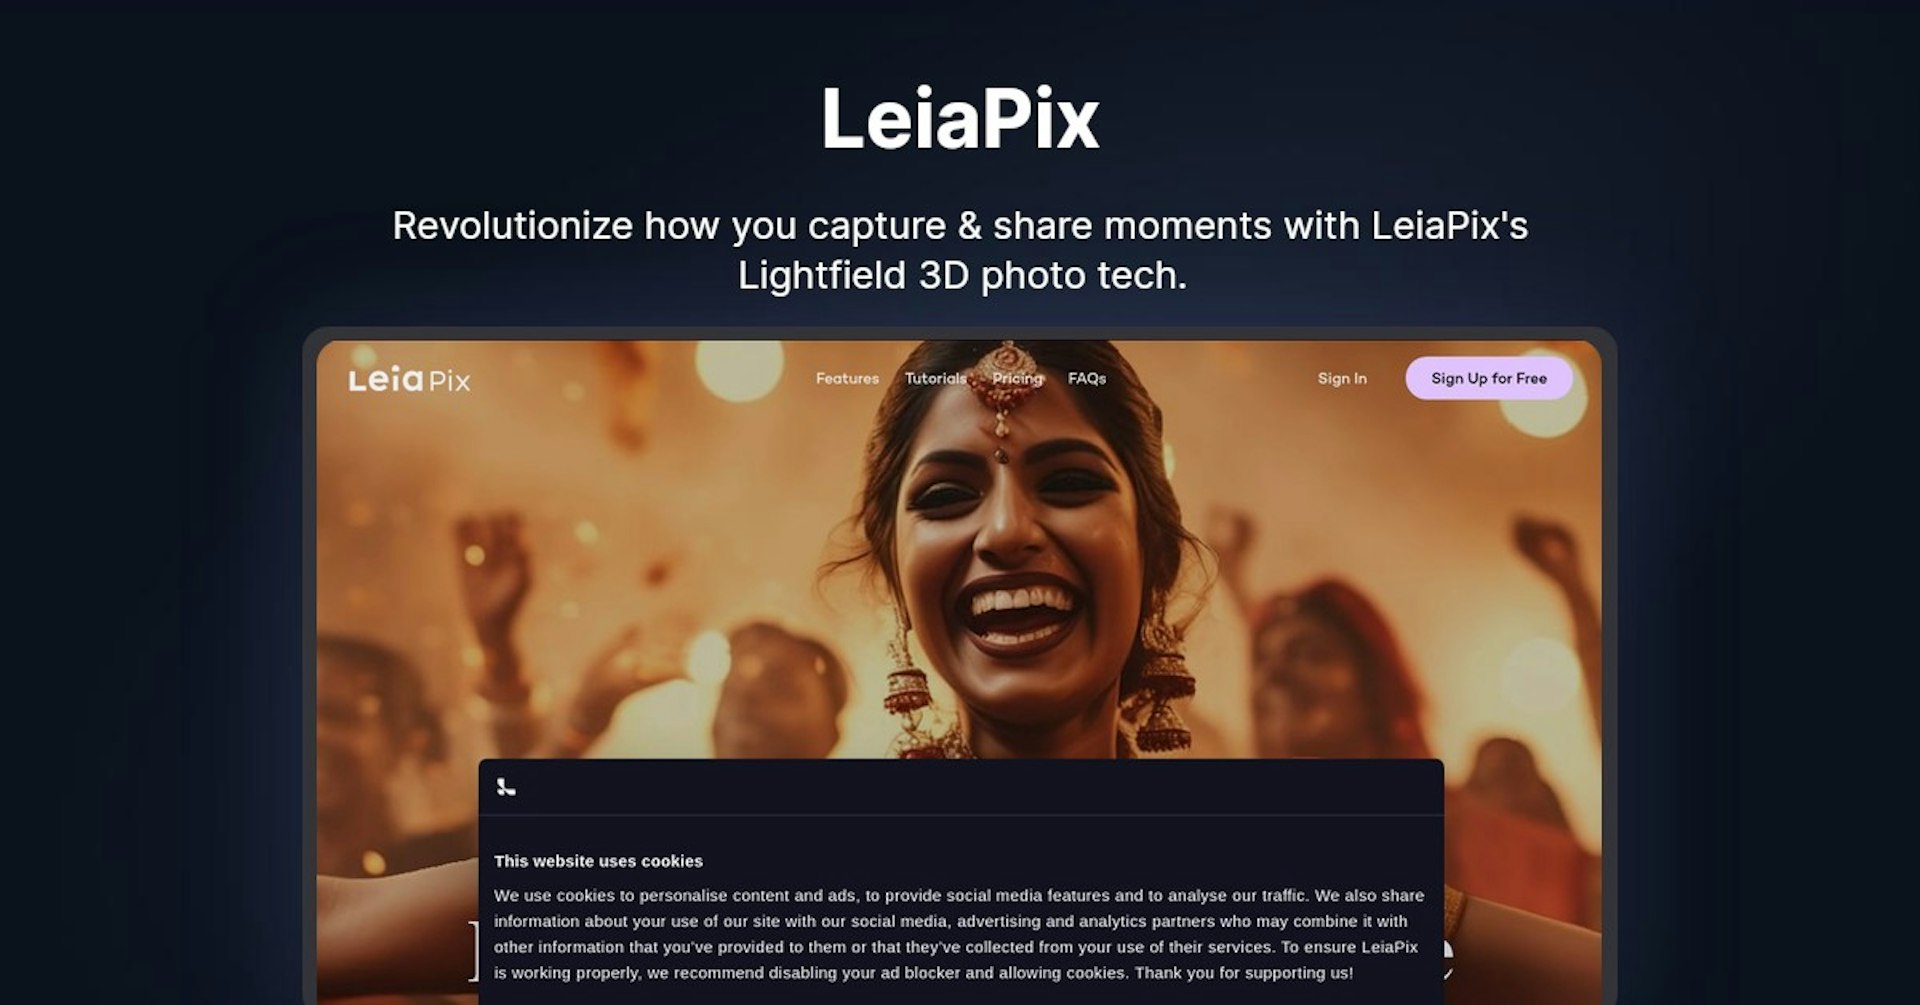 LeiaPix